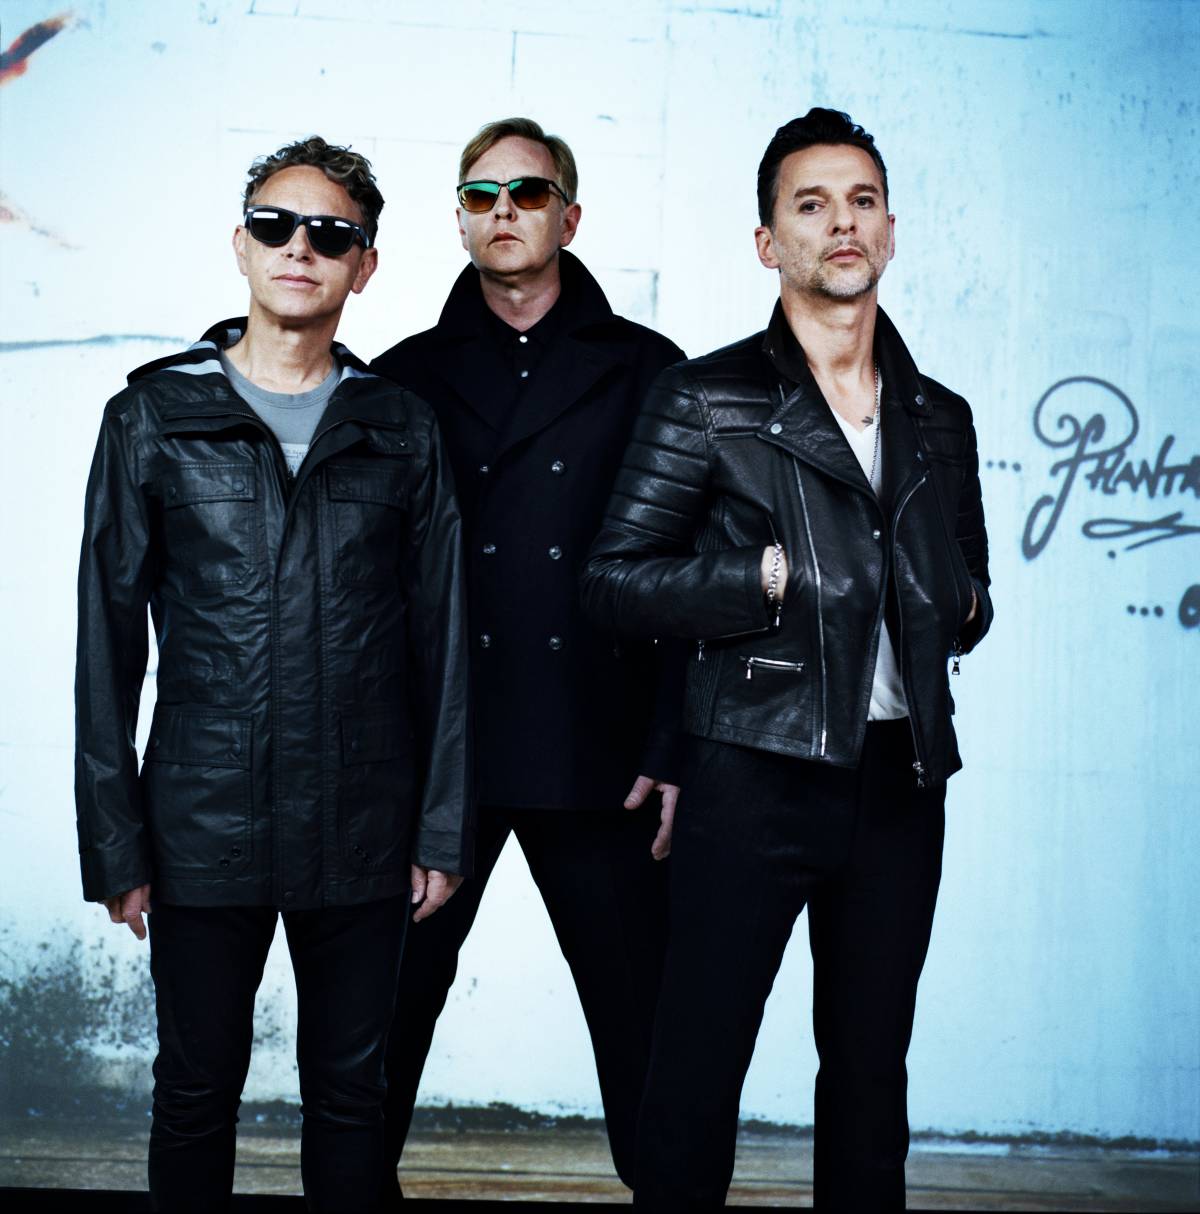 Stesso stile, nuova grinta: l'urlo dei Depeche Mode